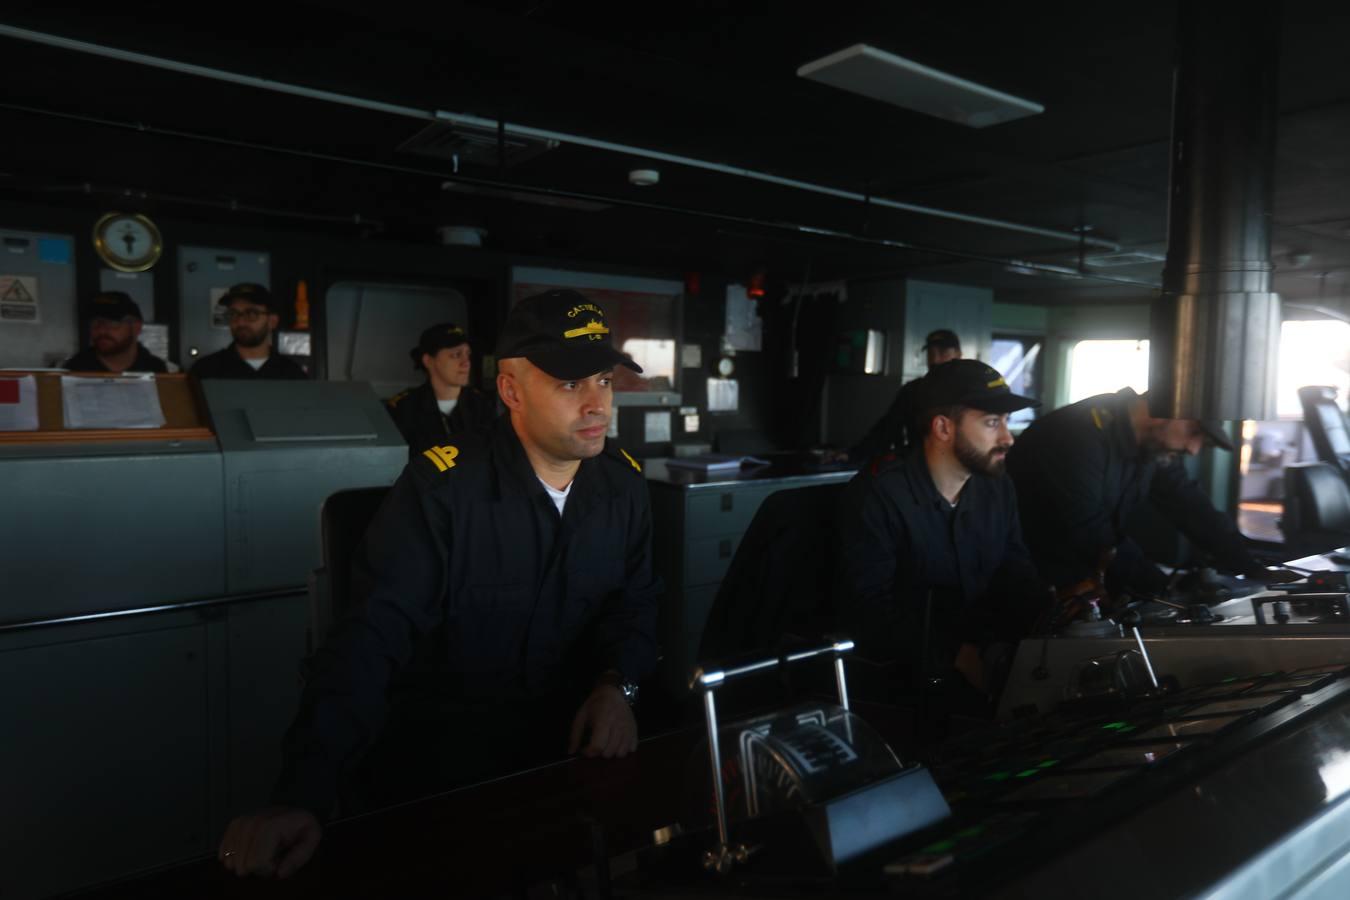 En imágenes: El &#039;Castilla&#039; llega a Rota tras cinco meses en la operación Atalanta (I)